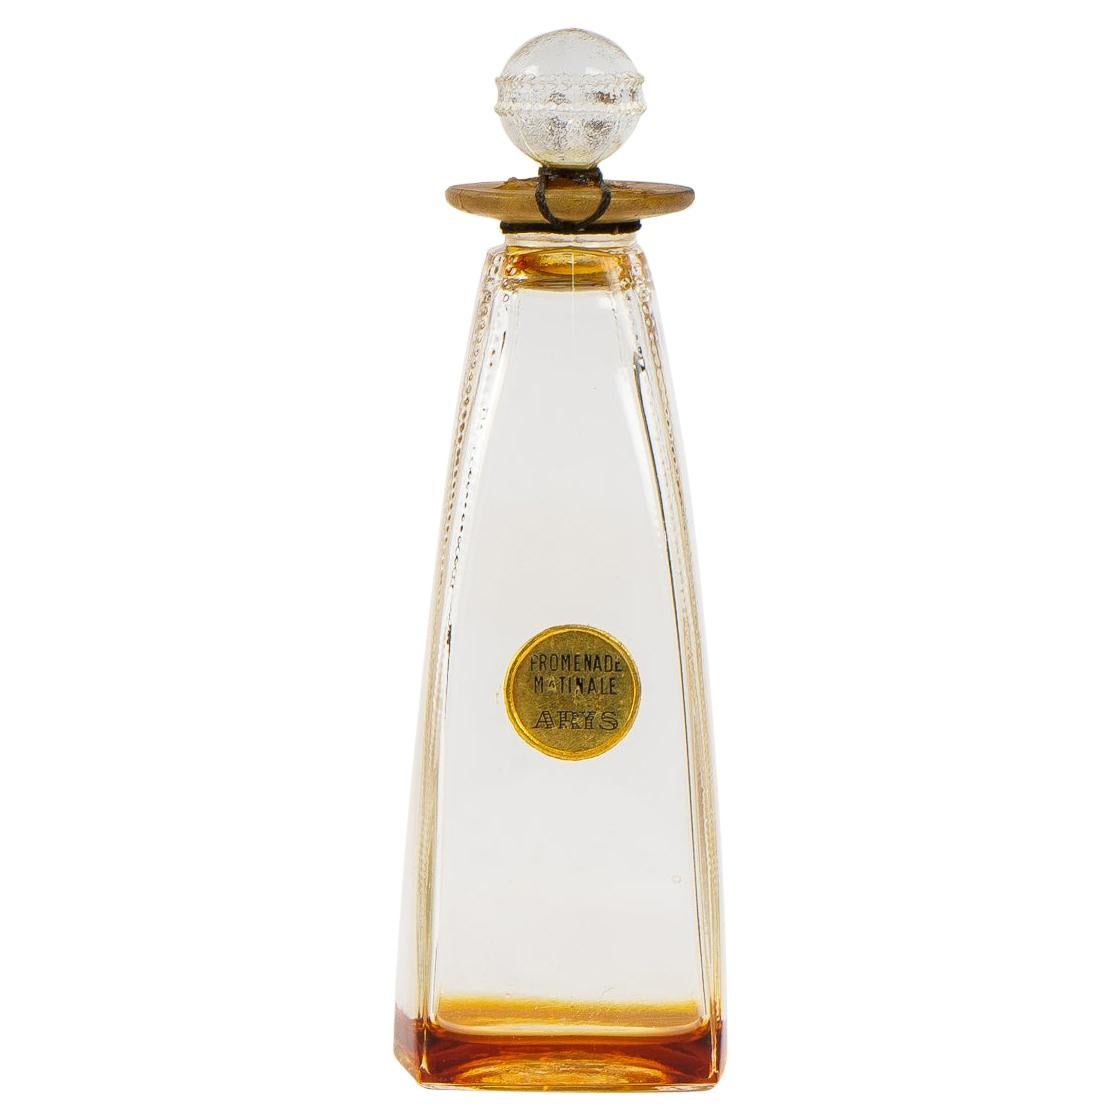 1920 Rene Lalique Rien que du Bonheur Perfume Bottle Arys Frosted Glass